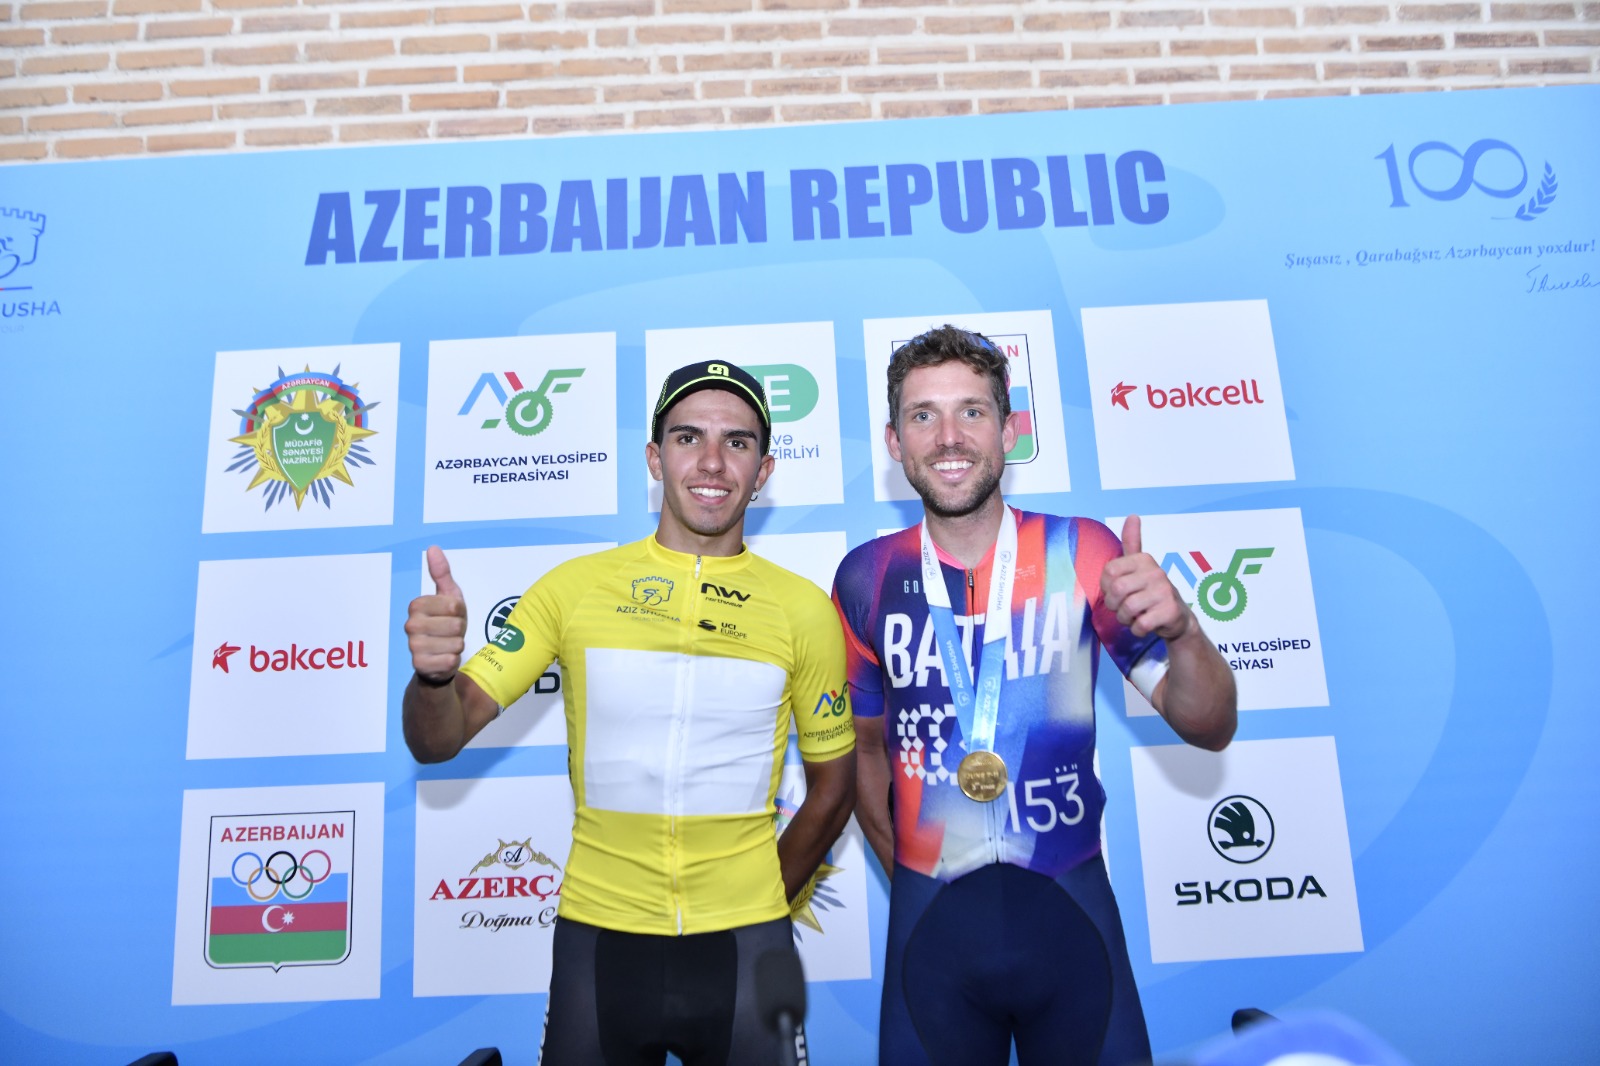 "Əziz Şuşa" beynəlxalq velosiped yarışının üçüncü mərhələsi keçirilib